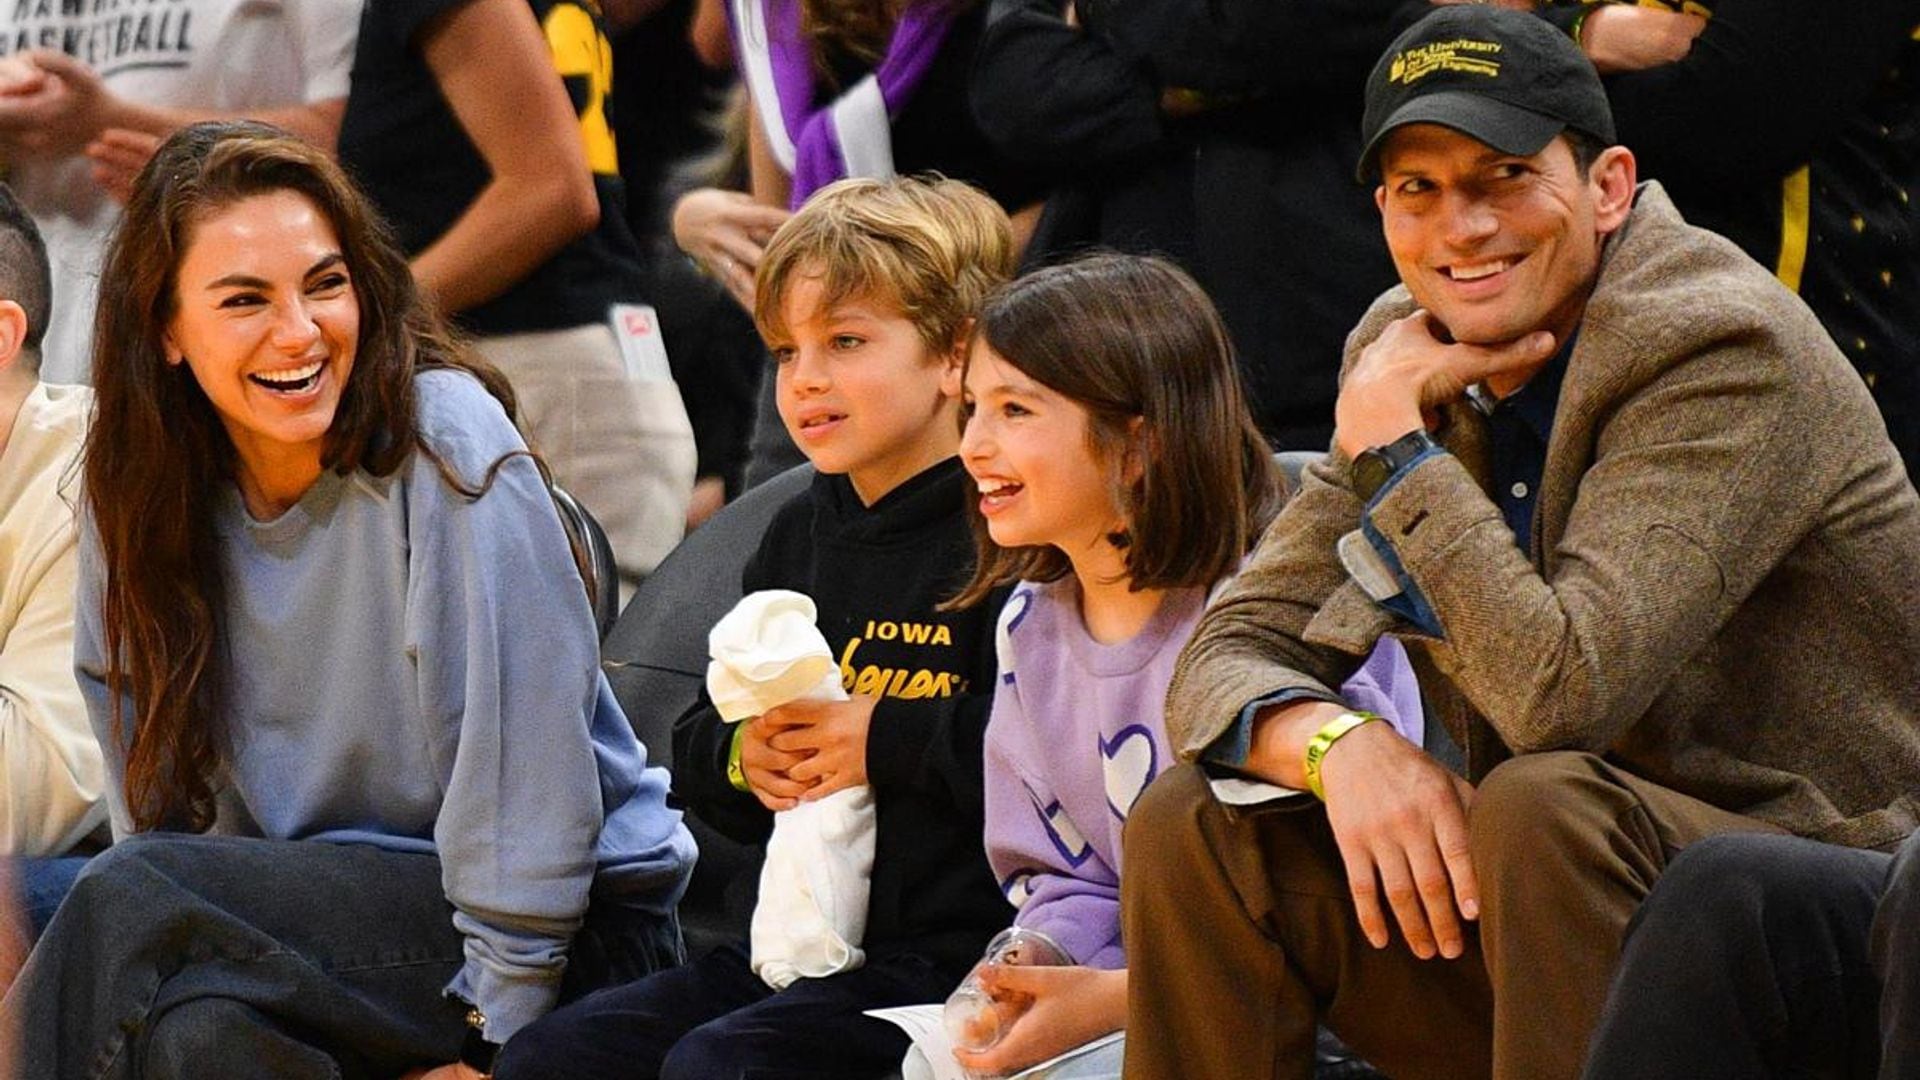 Ashton Kutcher and Mila Kunis’ rare public outing with their children